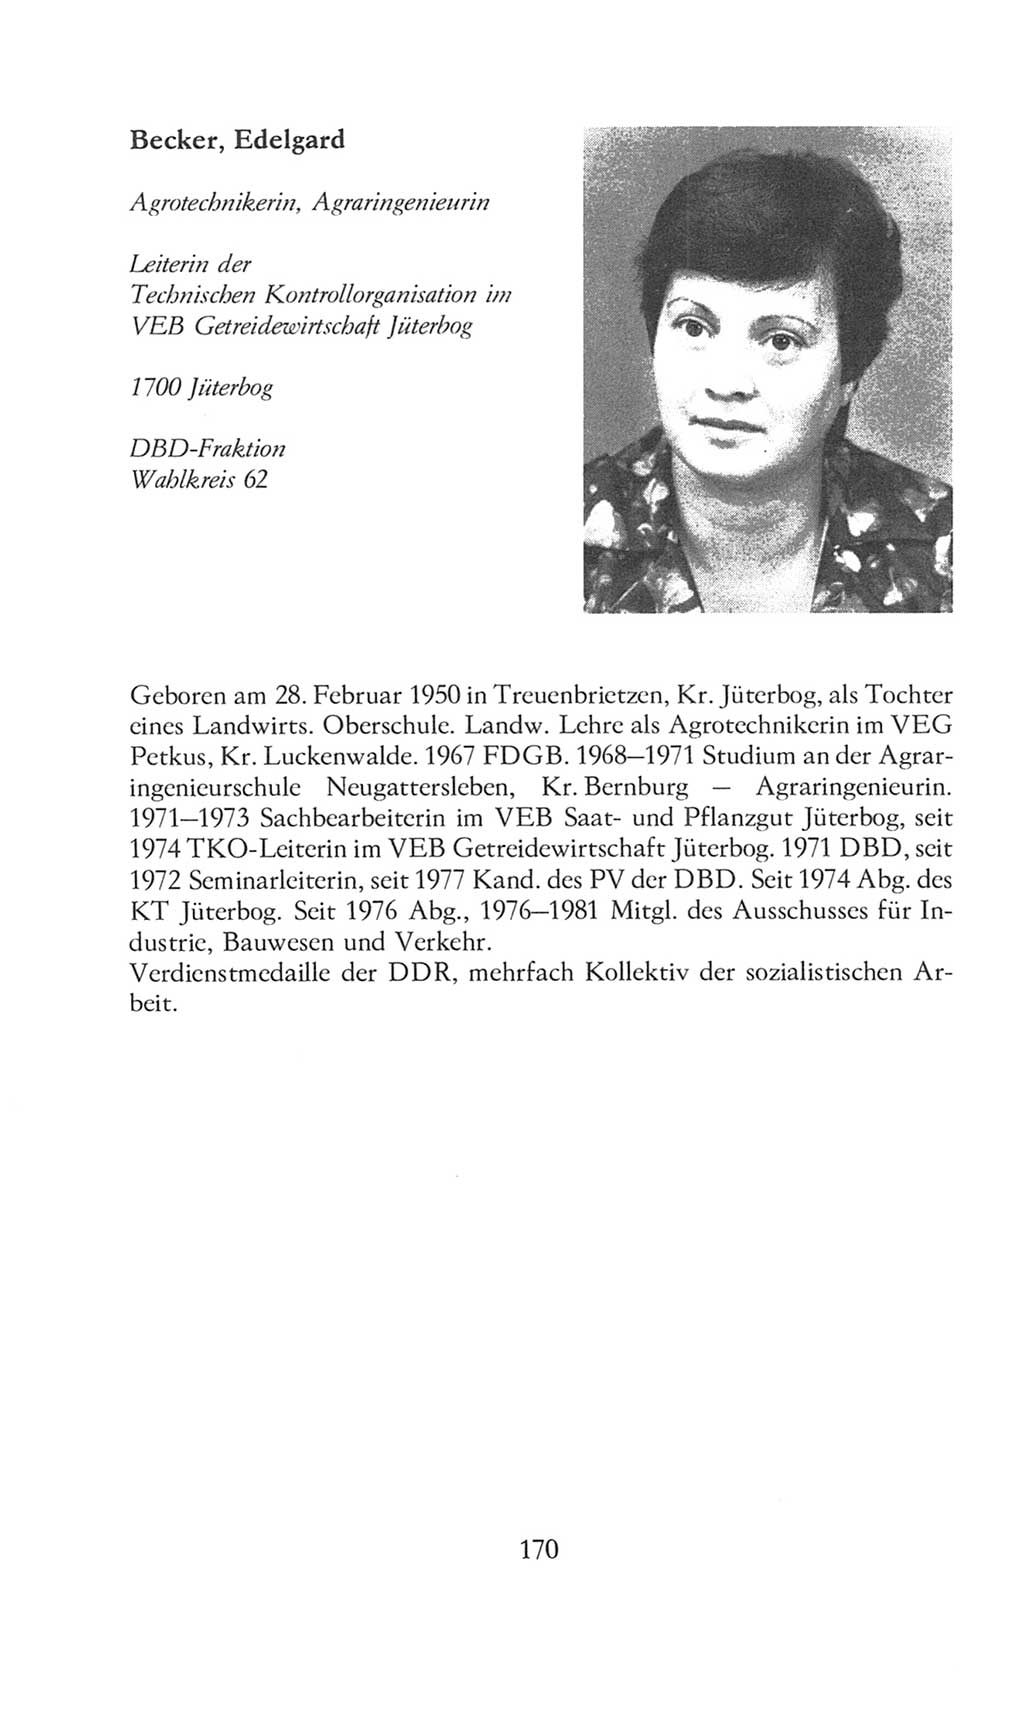 Volkskammer (VK) der Deutschen Demokratischen Republik (DDR), 8. Wahlperiode 1981-1986, Seite 170 (VK. DDR 8. WP. 1981-1986, S. 170)